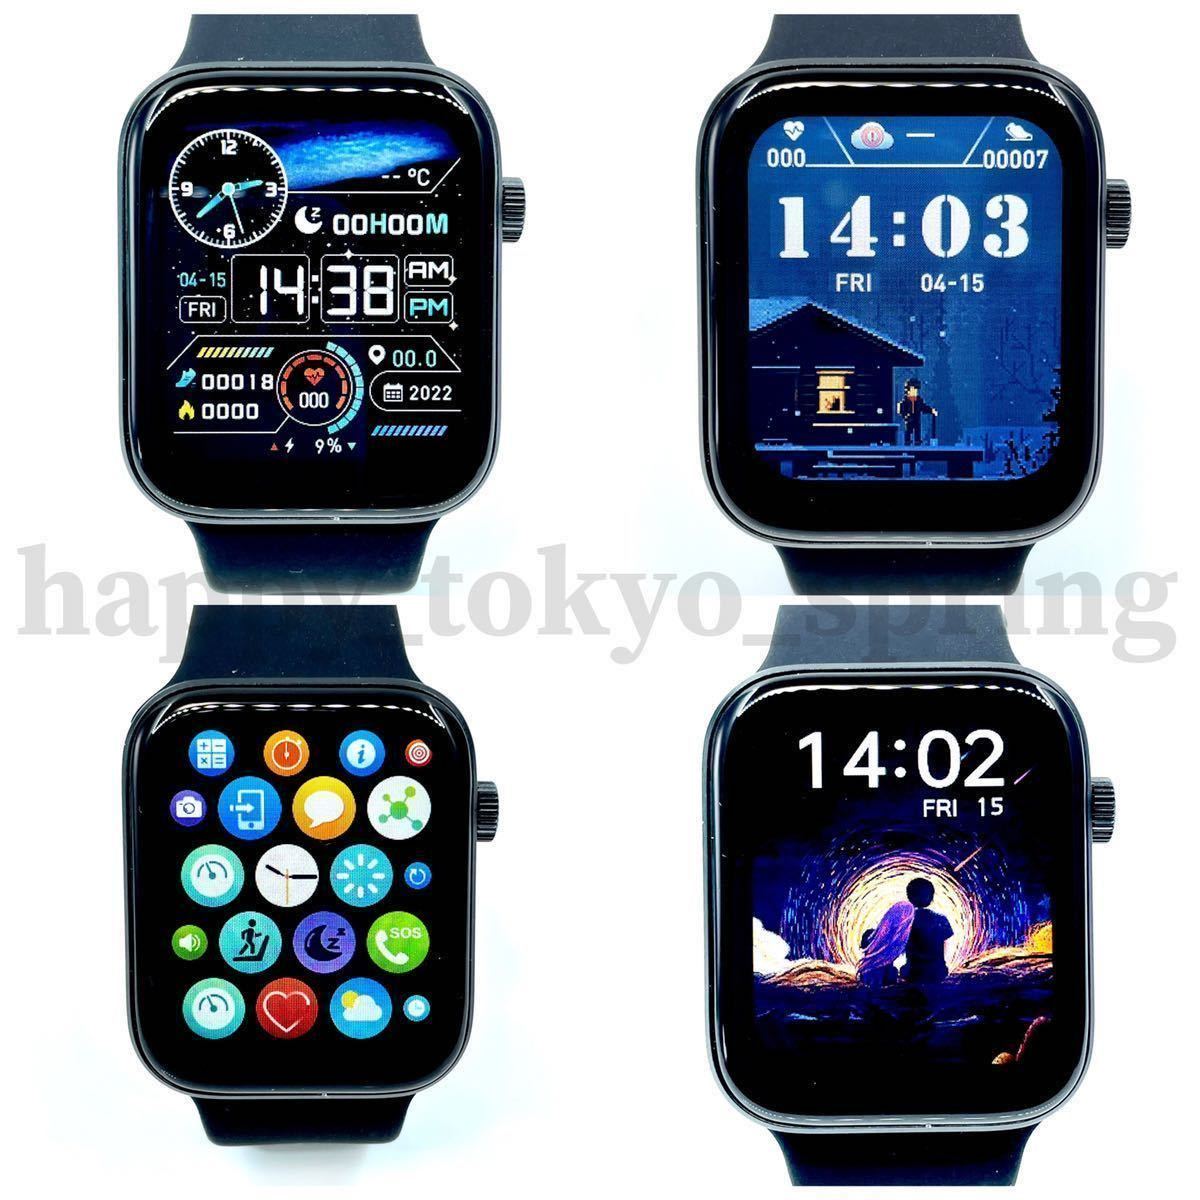 [2023 новейший ] японский язык отображать новый товар смарт-часы телефонный разговор музыка многофункциональный Watch7 здоровье спорт водонепроницаемый . средний кислород android кровяное давление сердце .iphone сон.